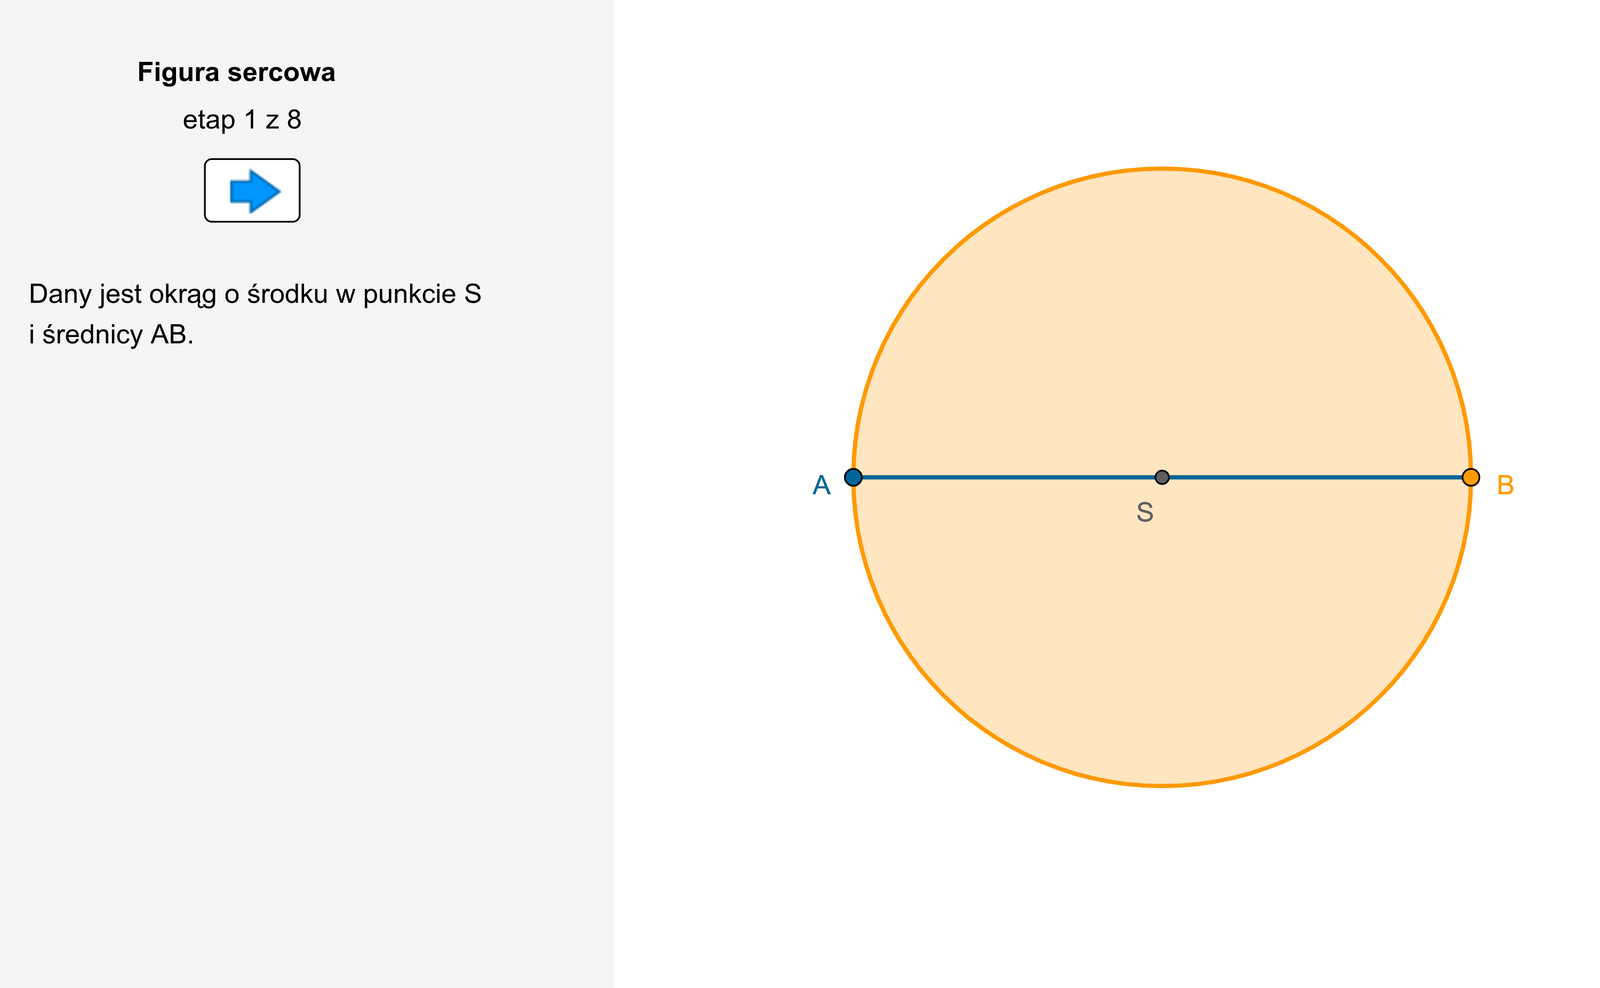 W aplecie przedstawiono rysunek okręgu, na którym zaznaczono środek S oraz poziomą średnicę AB.  Następnie poprowadzono prostopadłą średnicę do średnicy AB, której górny kraniec jest oznaczony literą C. W trzecim etapie apletu połączone zostały punkty A B C tworząc trójkąt o podstawie równej średnicy A B oraz wysokości S C, która jest promieniem rozważanego okręgu.  Na podstawie znanego twierdzenia wiadomo, że trójkąt A B C jest prostokątny. Na przyprostokątnych trójkąta A B C które traktowane są jako średnice, zbudowane zostały dwa przystające okręgi o środkach w punktach O 1 i O2. W kolejnym kroku został zakreślony łuk A E B o promieniu C A i środku w punkcie C, który zawiera się w kole o średnicy AB. Punkt E leży na prostopadłej średnicy do średnicy AB pod środkiem okręgu S. Obszar zawarty między tym łukiem a łukiem A K C i B L C, gdzie K jest punktem leżącym na okręgu o środku O1 oraz L jest punktem leżący na okręgu o środku w punkcie O 2 ma kształt przypominający serce. W przedostatnim etapie animacji tabletu pokazuje się możliwość odczytania miary pól figur. Po zaznaczeniu tej możliwości dowiadujemy się, że pole figury sercowej jest równe 542,06 oraz pole koła o promieniu SA również równy jest 542, 06.  W ostatnim etapie pojawia się możliwość zmiany położenia punktu B leżącego na okręgu o promieniu SA. Wówczas pole figury sercowej i pole koła o promieniu SA zmniejsza się lub powiększa odpowiednio z powiększającym lub zmniejszającym się promieniem. Bez względu na wielkość promienia obydwie miary pola są takie same.